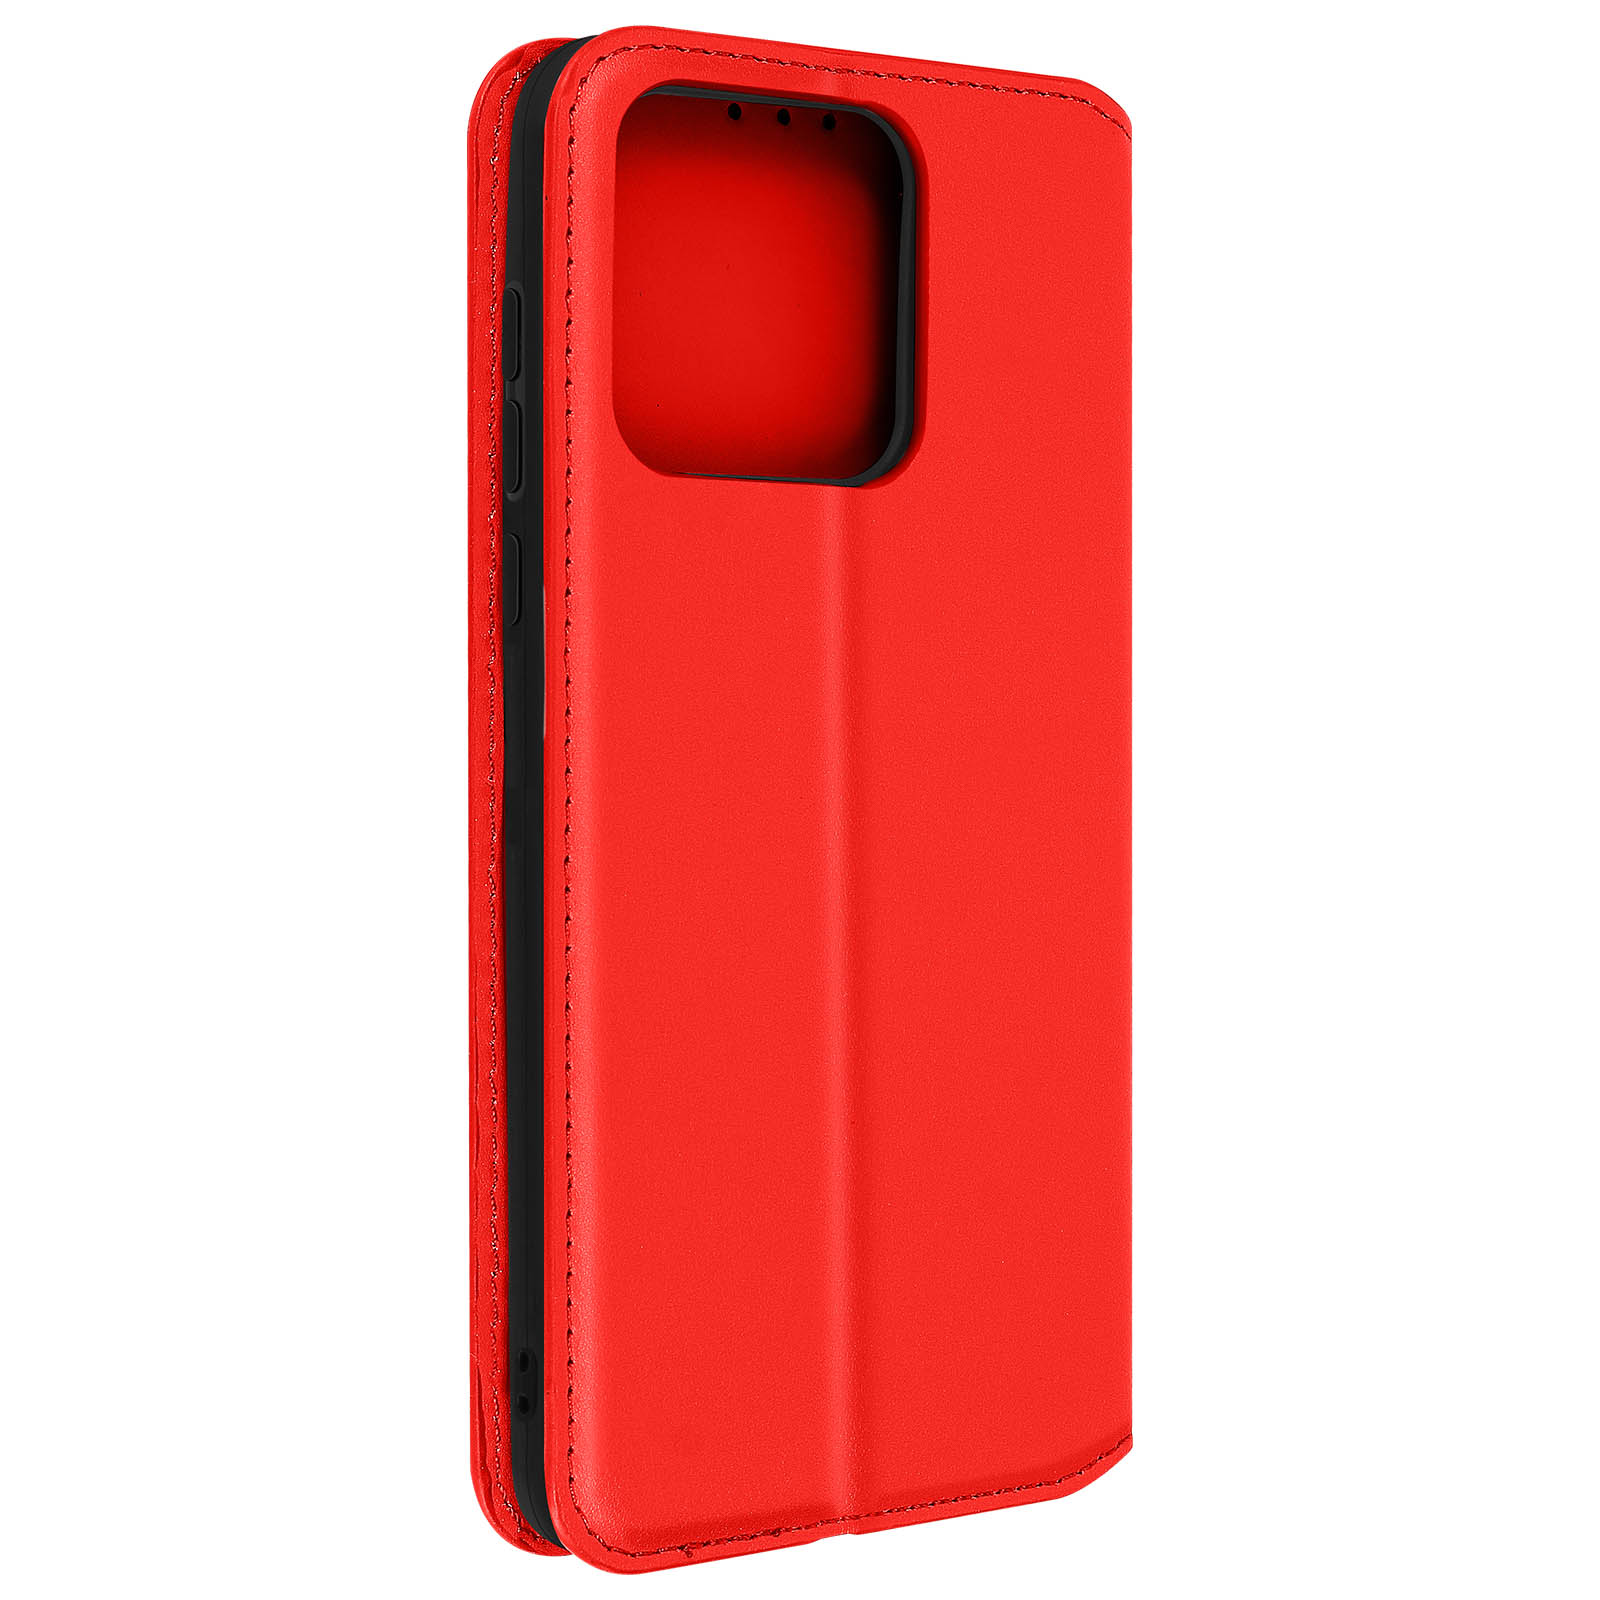 AVIZAR Classic Edition Klappetui Redmi Rot Xiaomi, 10C, Bookcover, Series